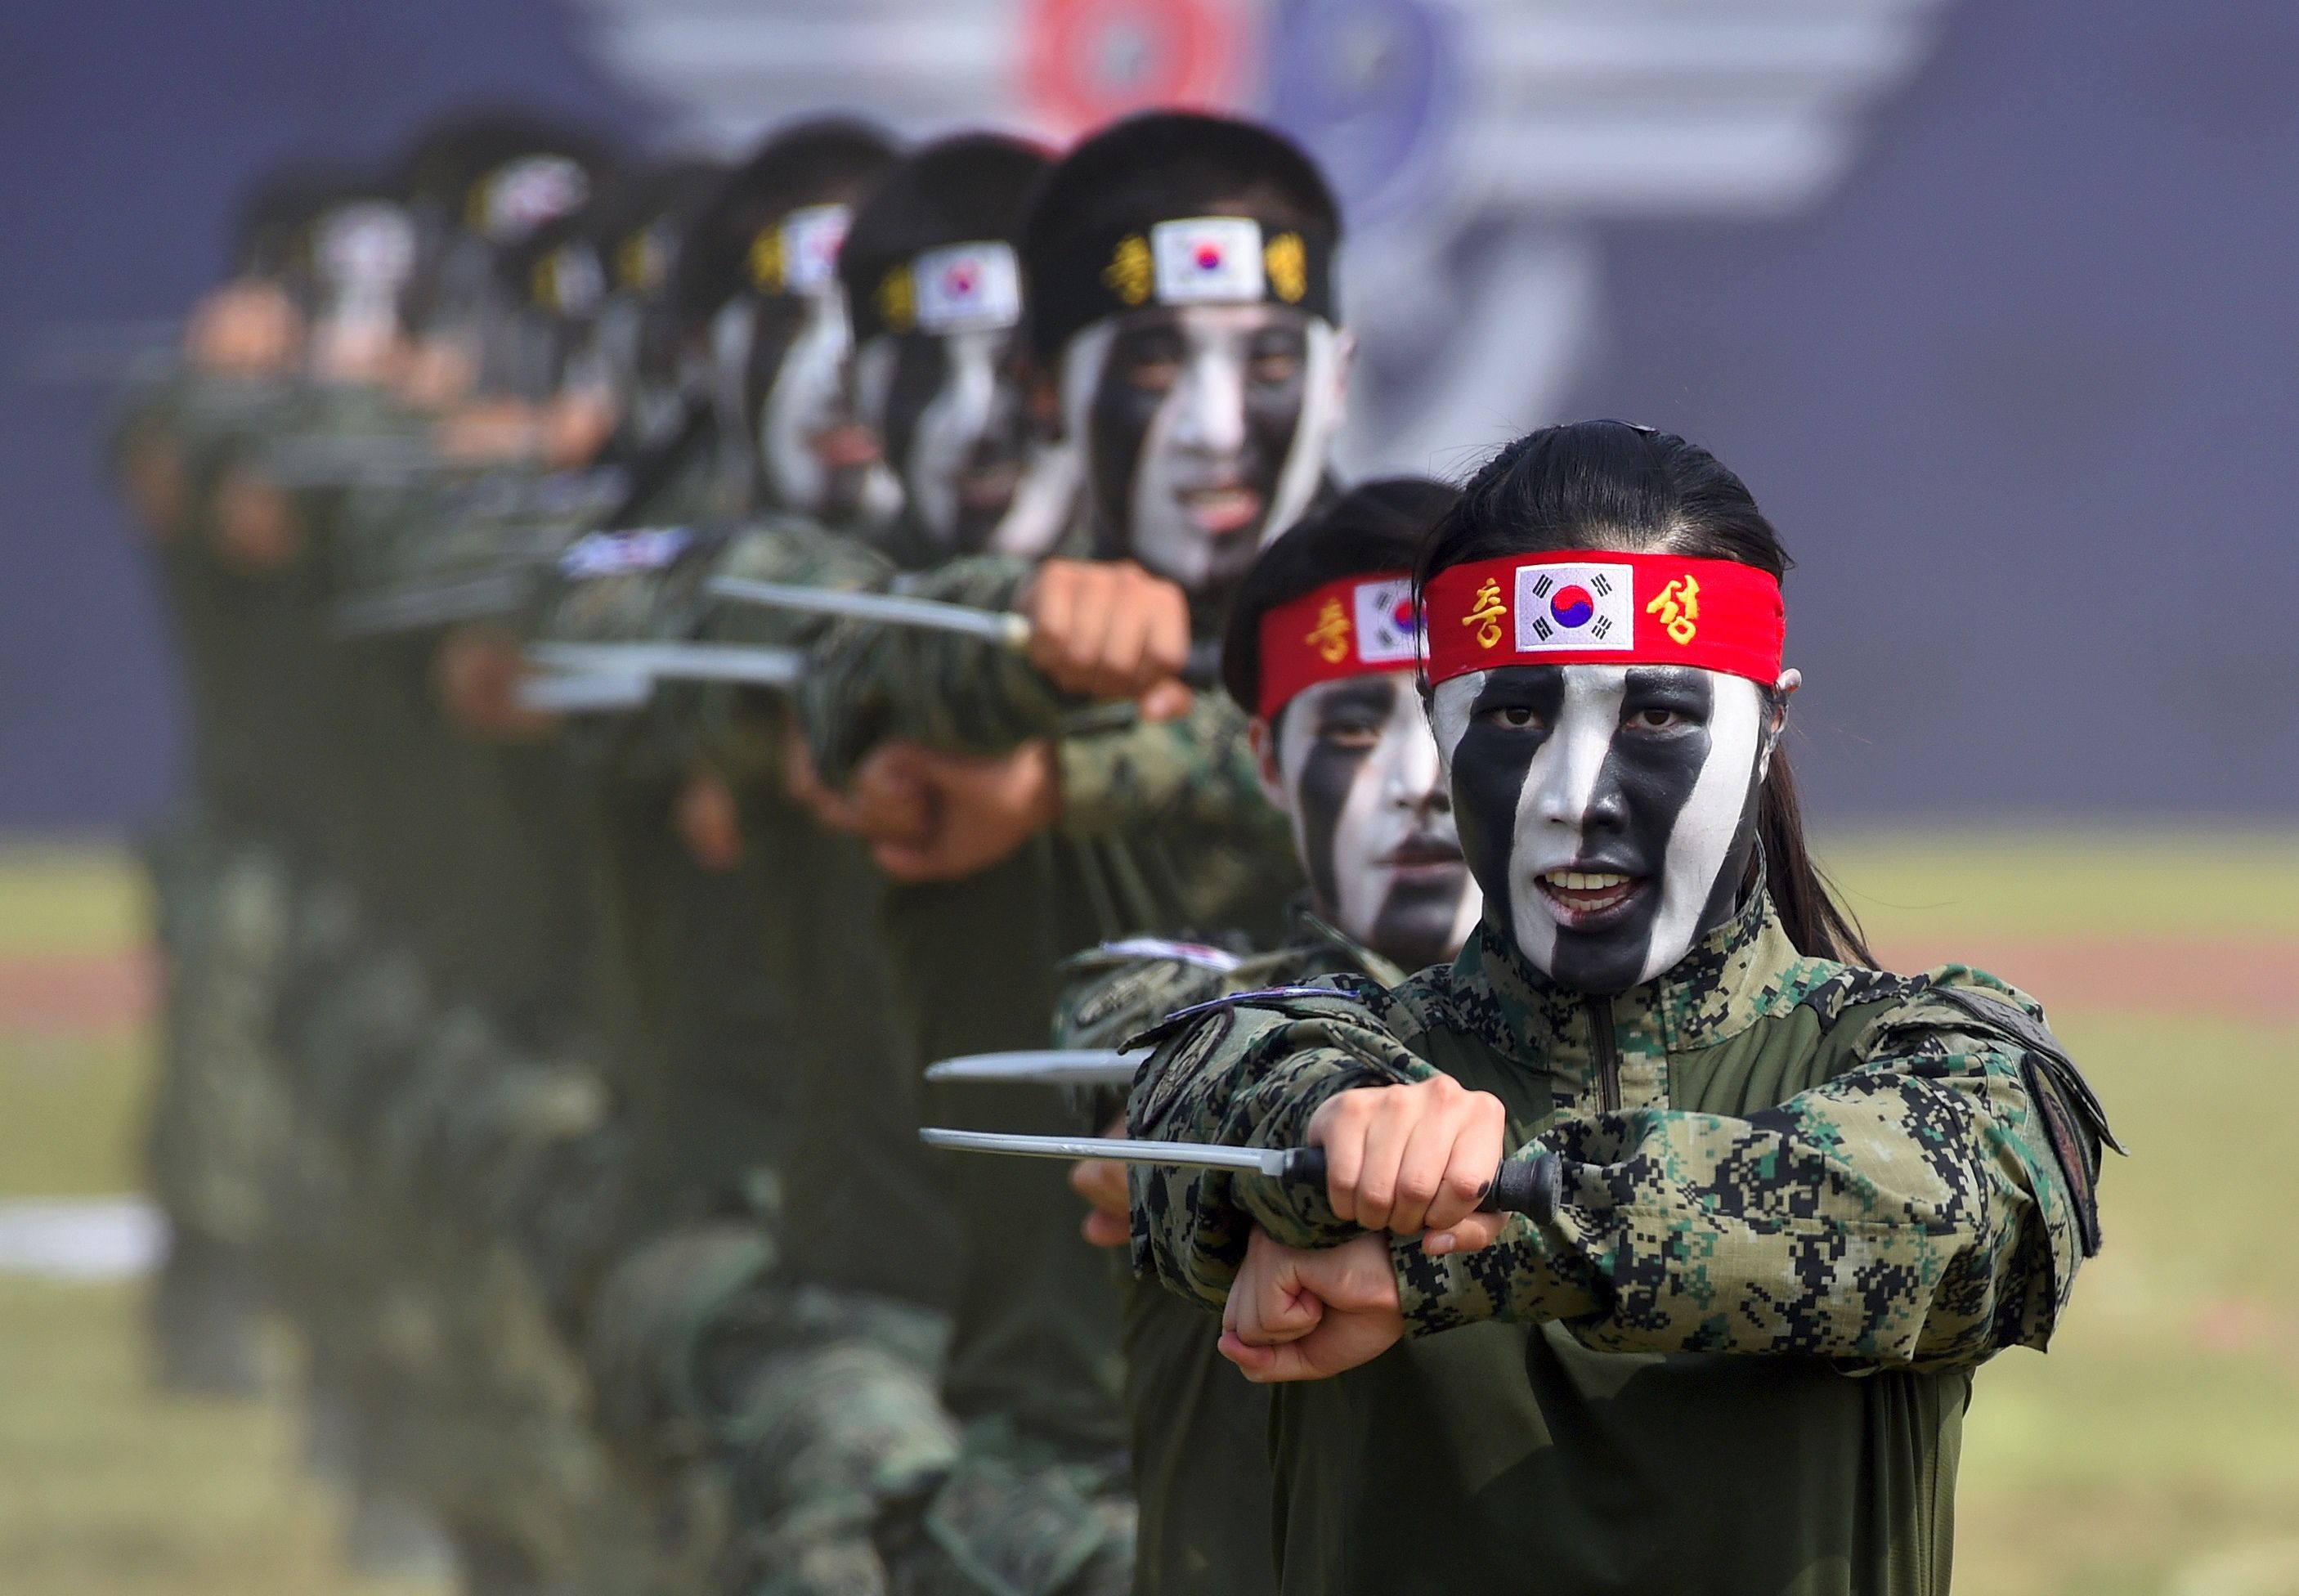 عروض قتالية فردية بالأسلحة البيضاء لجنود كوريا الجنوبية